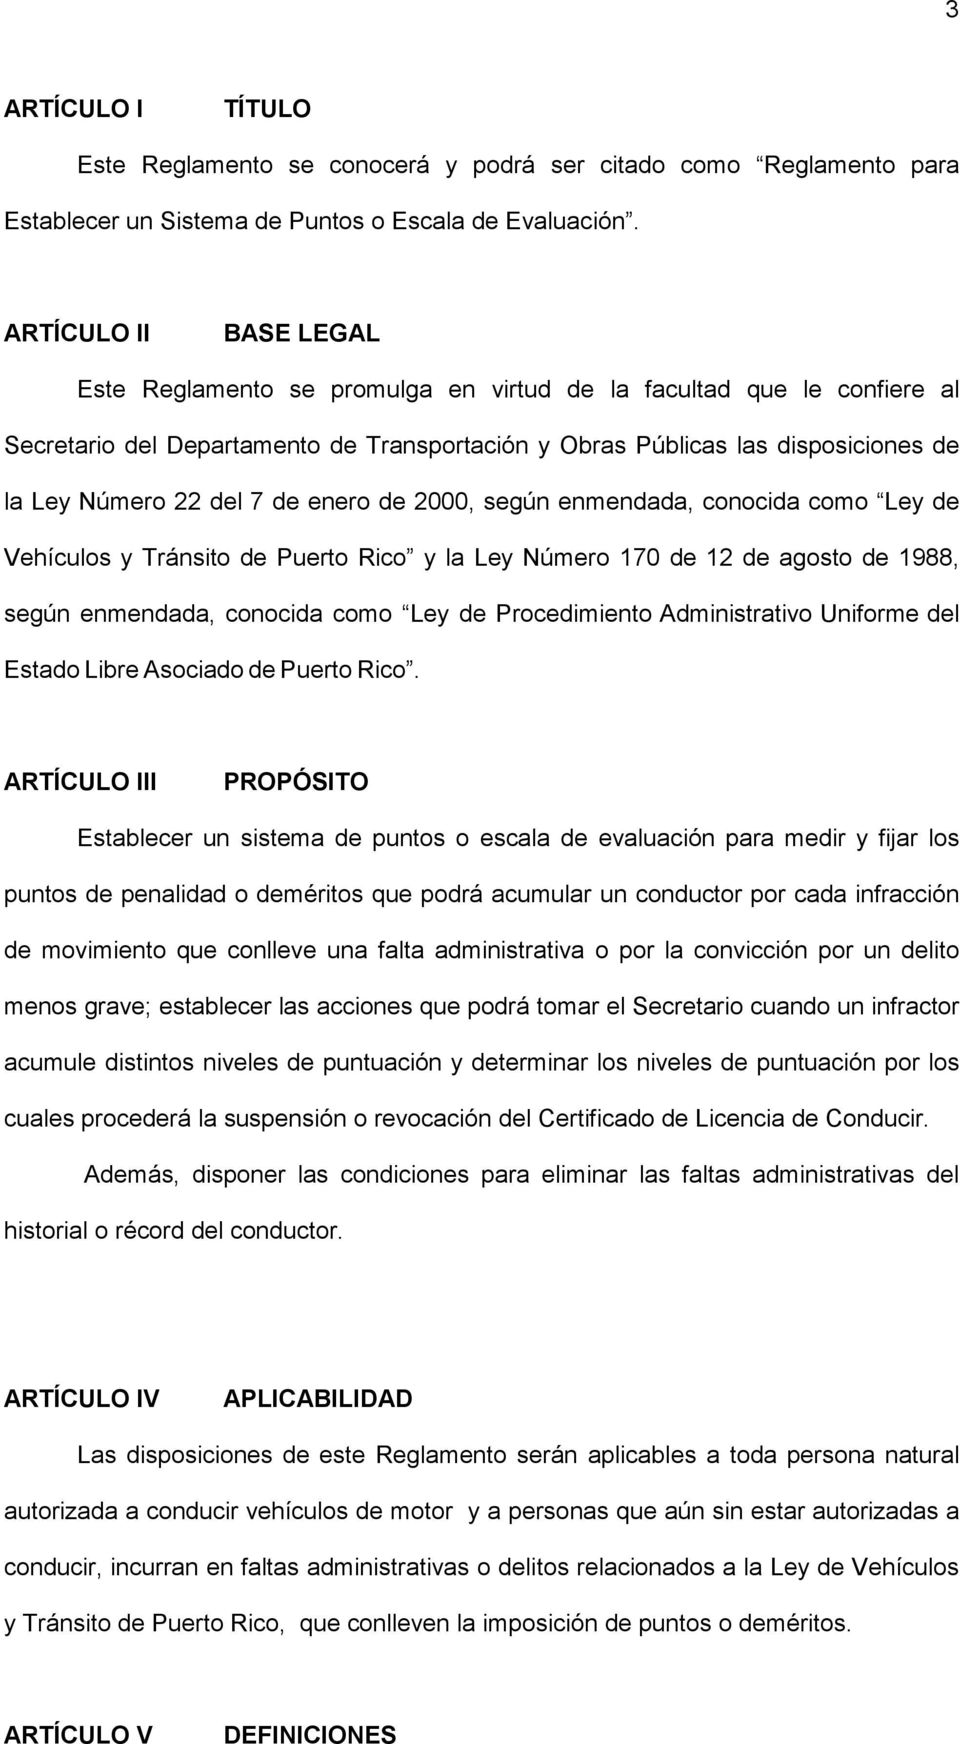 7 de enero de 2000, según enmendada, conocida como Ley de Vehículos y Tránsito de Puerto Rico y la Ley Número 170 de 12 de agosto de 1988, según enmendada, conocida como Ley de Procedimiento